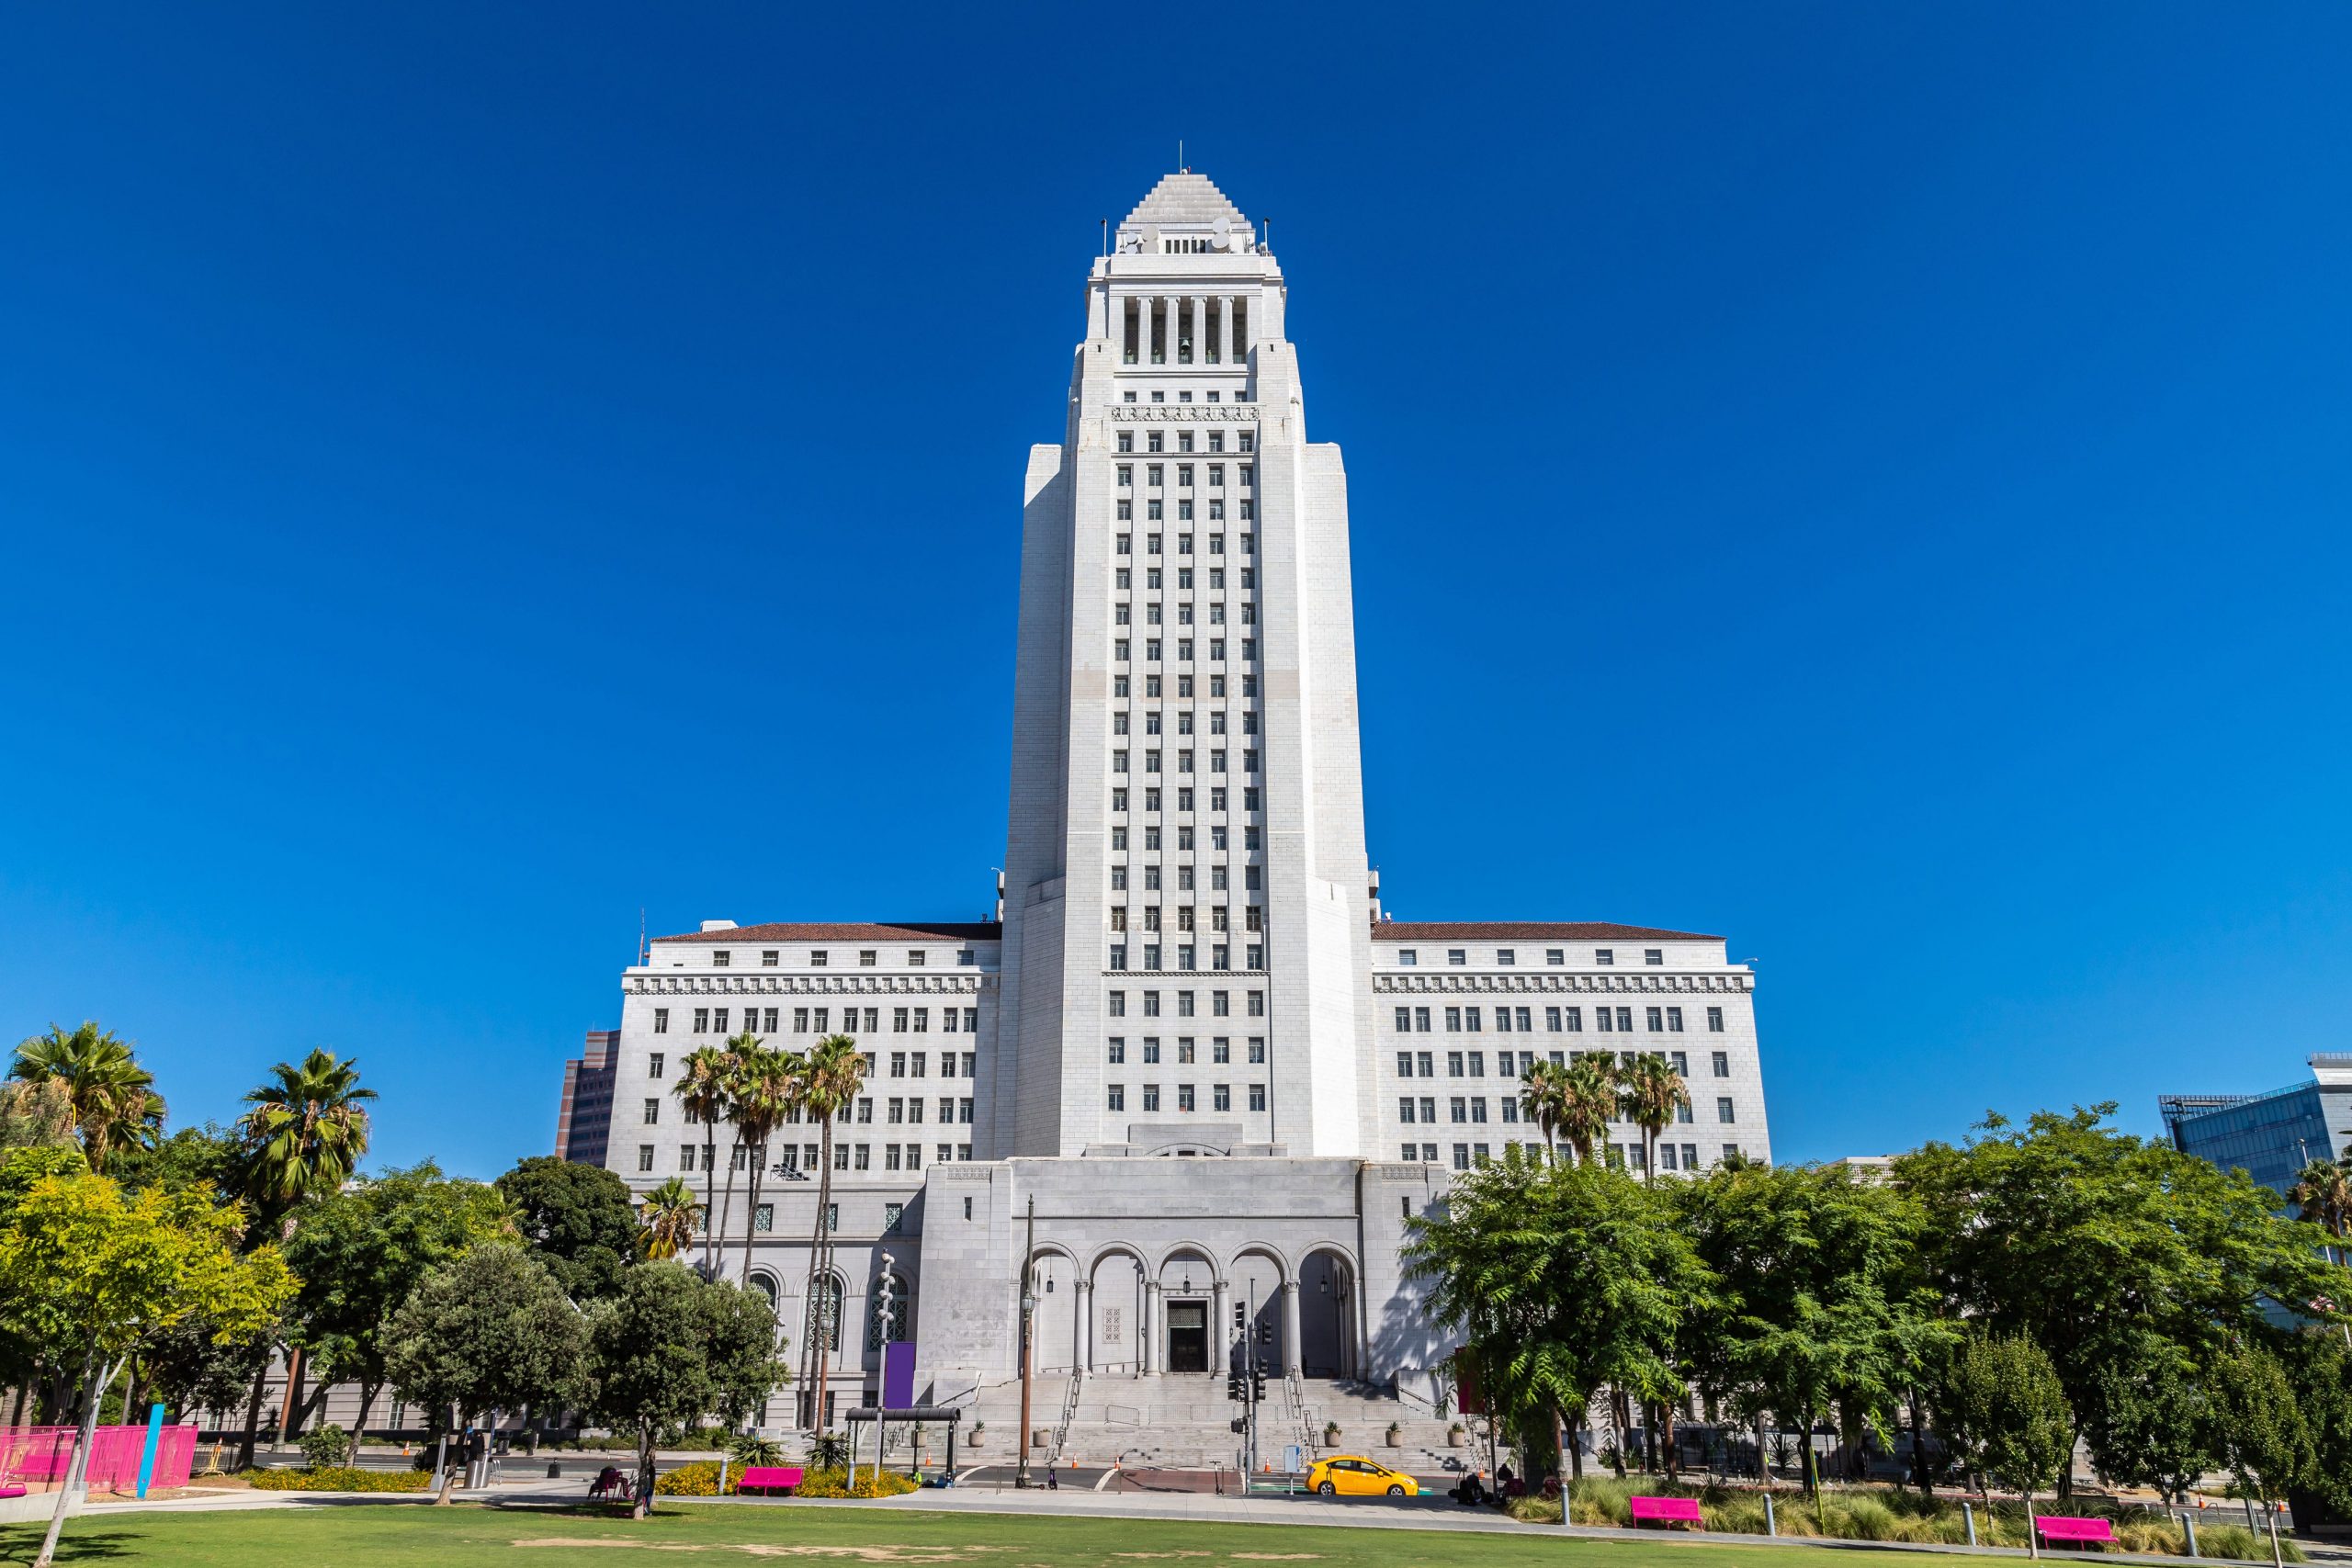 L.A. City Controller releases details on Inside Safe audit [Video]